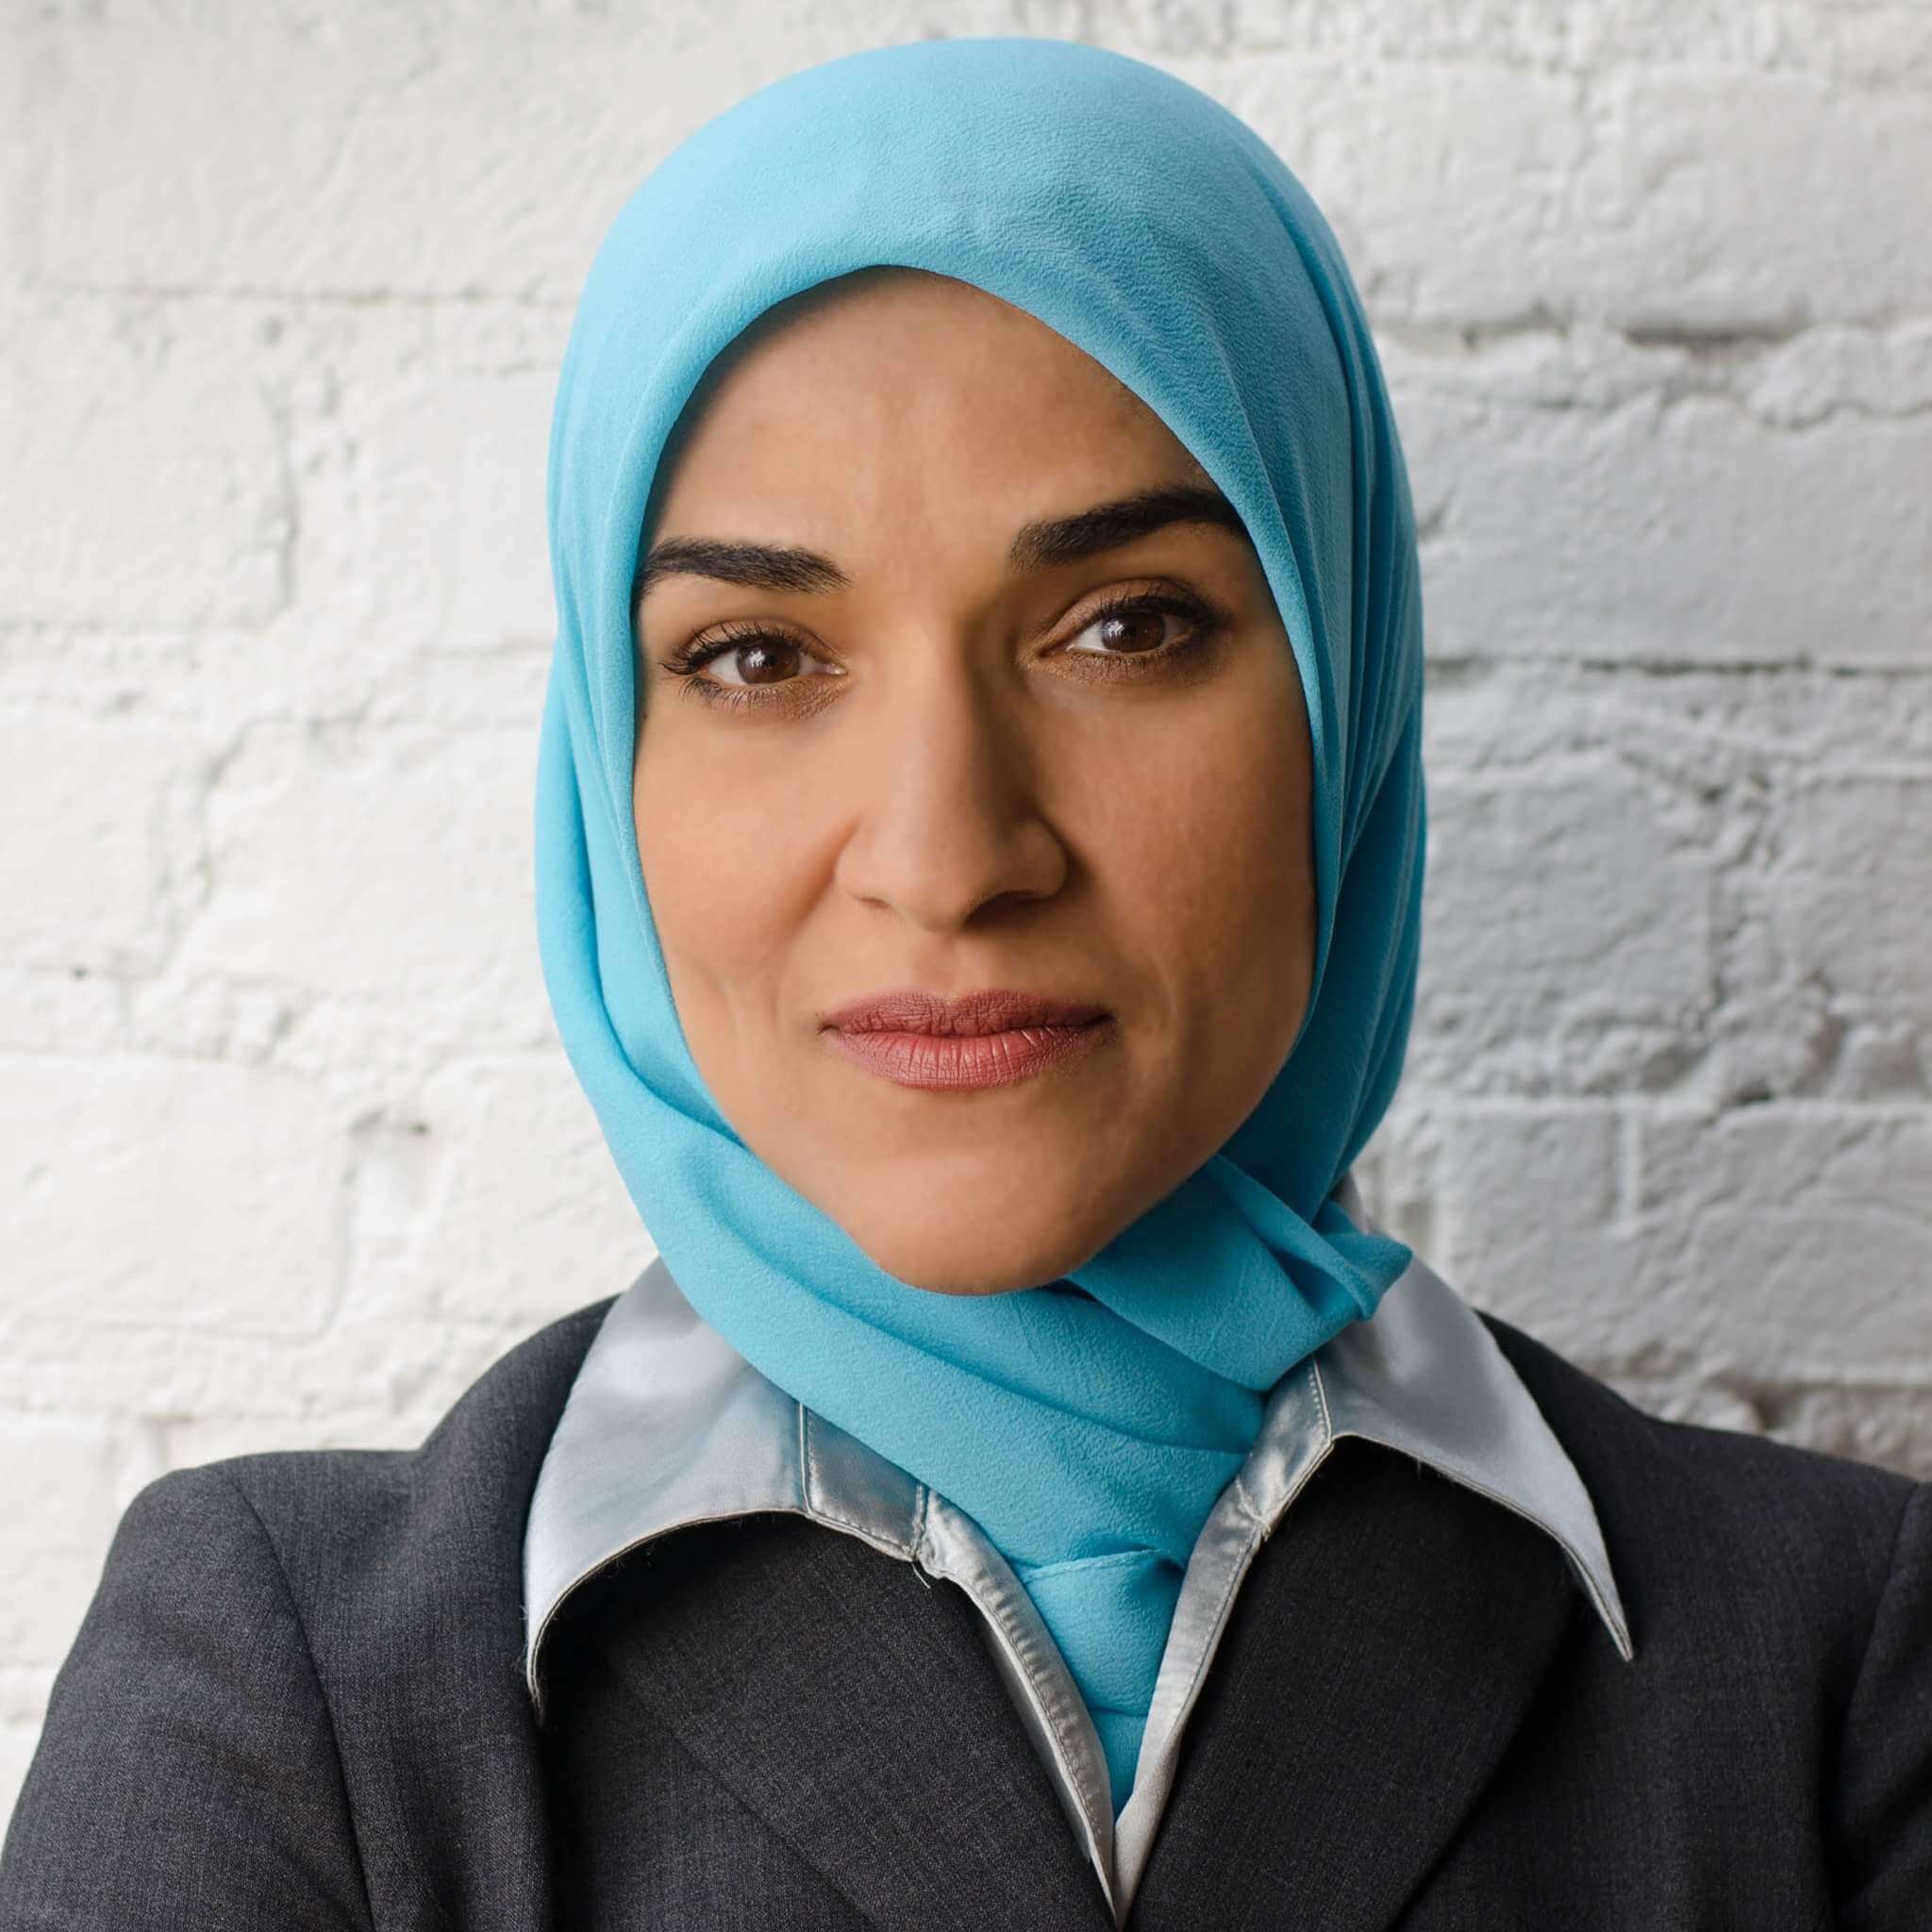 داليا🎀 مثال حي وفخر للمرأة المسلمة المكافحة! ♡